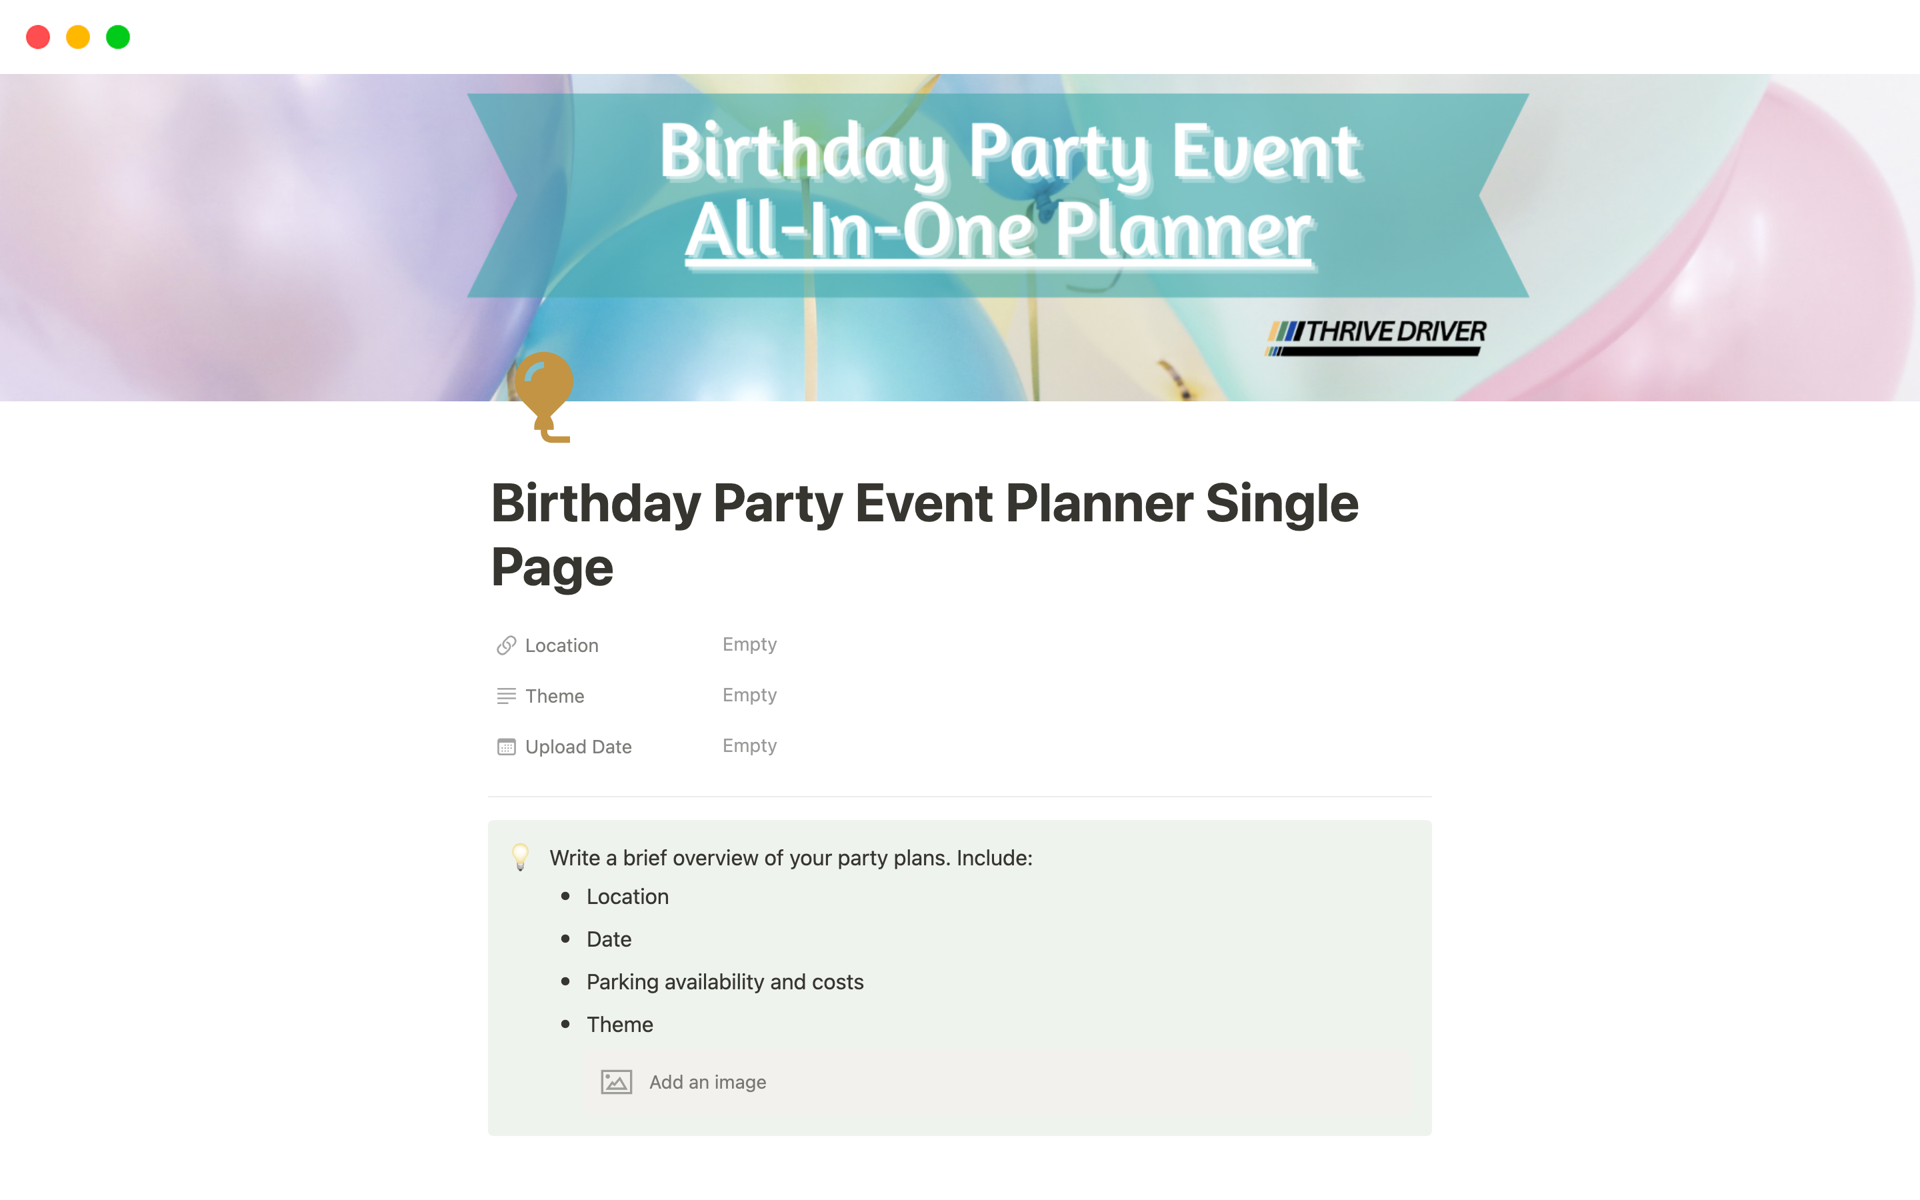 Aperçu du modèle de Birthday Party Event Planner Single Page